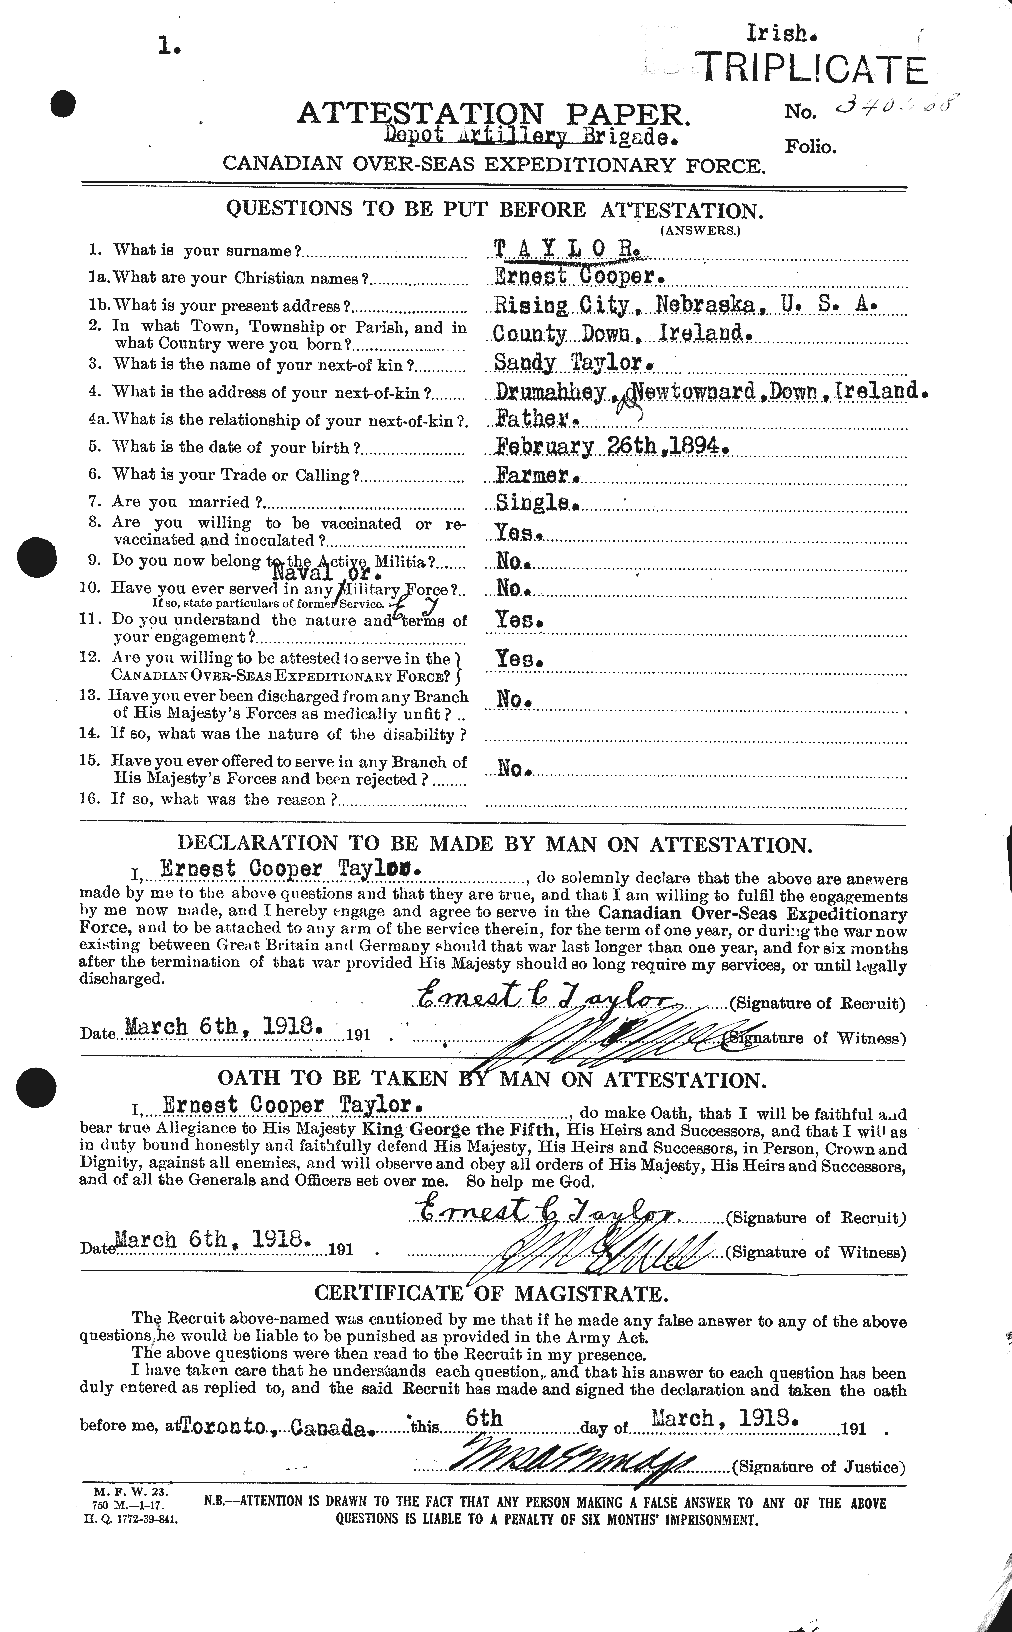 Dossiers du Personnel de la Première Guerre mondiale - CEC 627389a